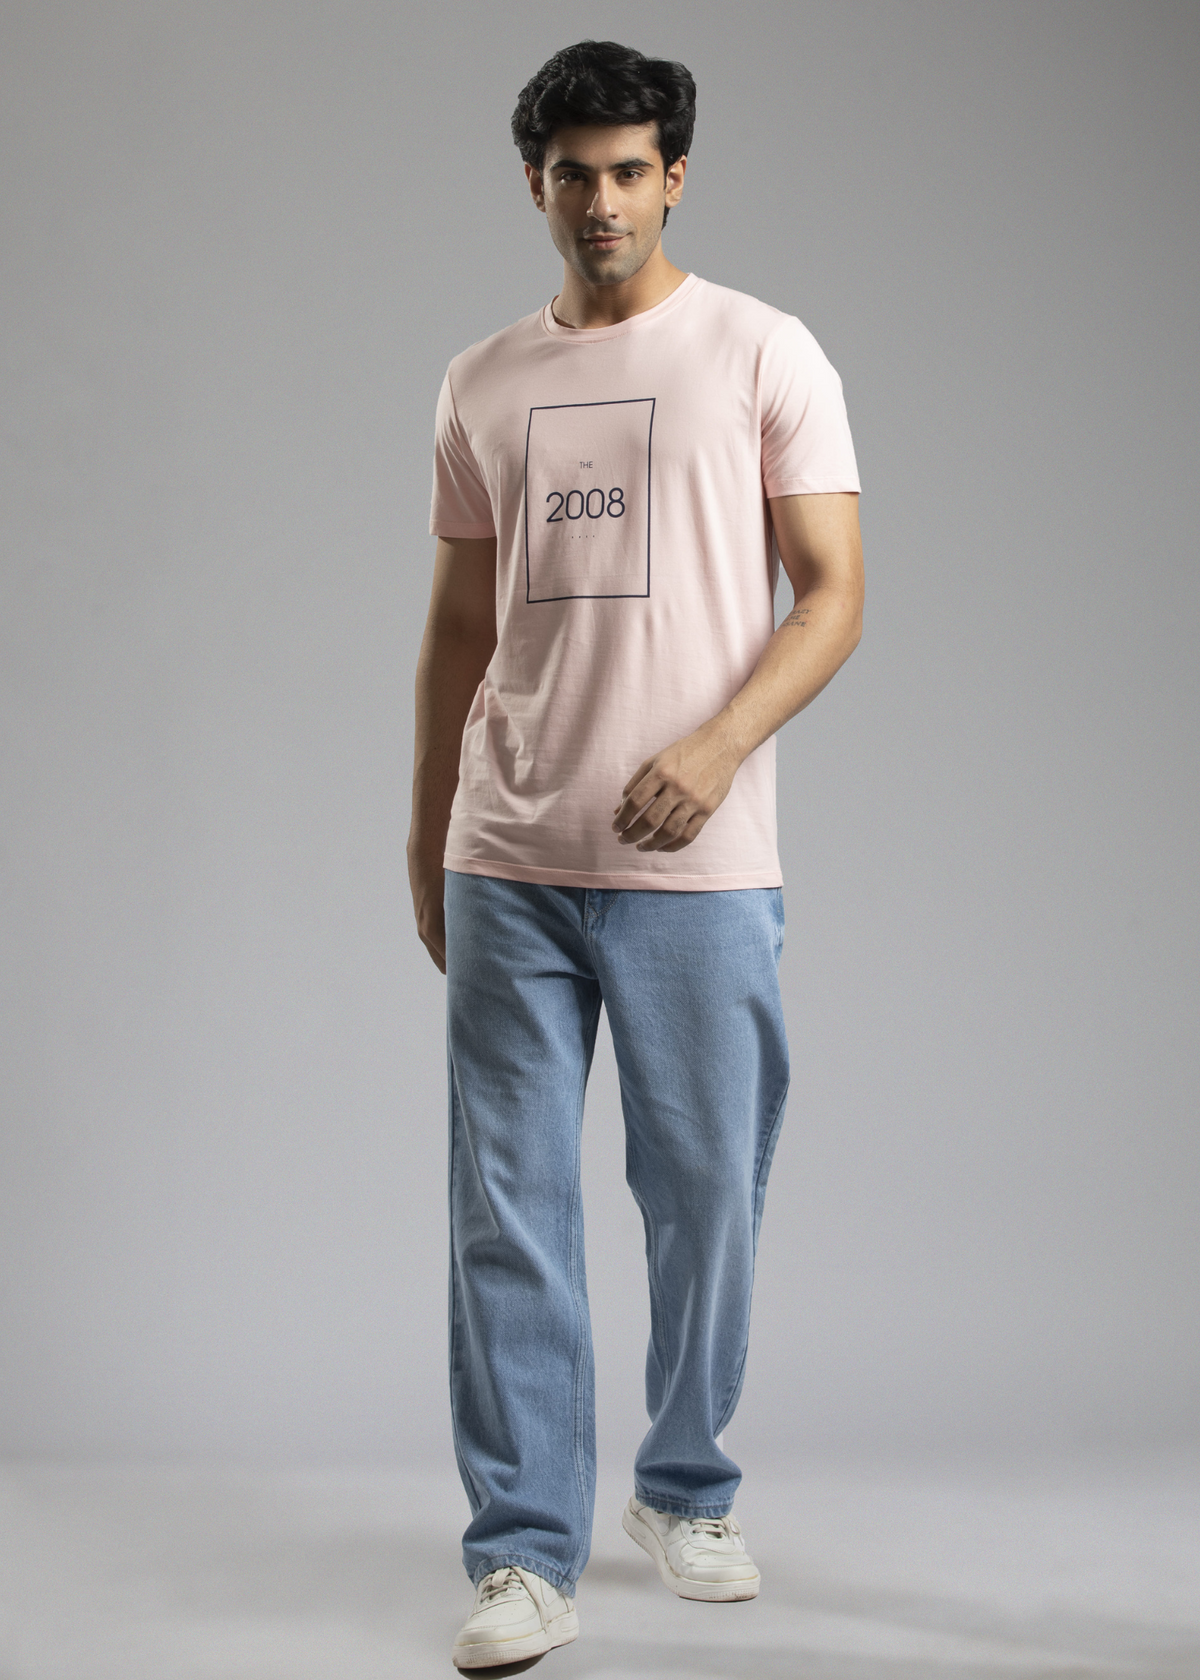 Gecko Round Neck Half Sleeve Graphic Printed T-shirt For Men - Nostrum